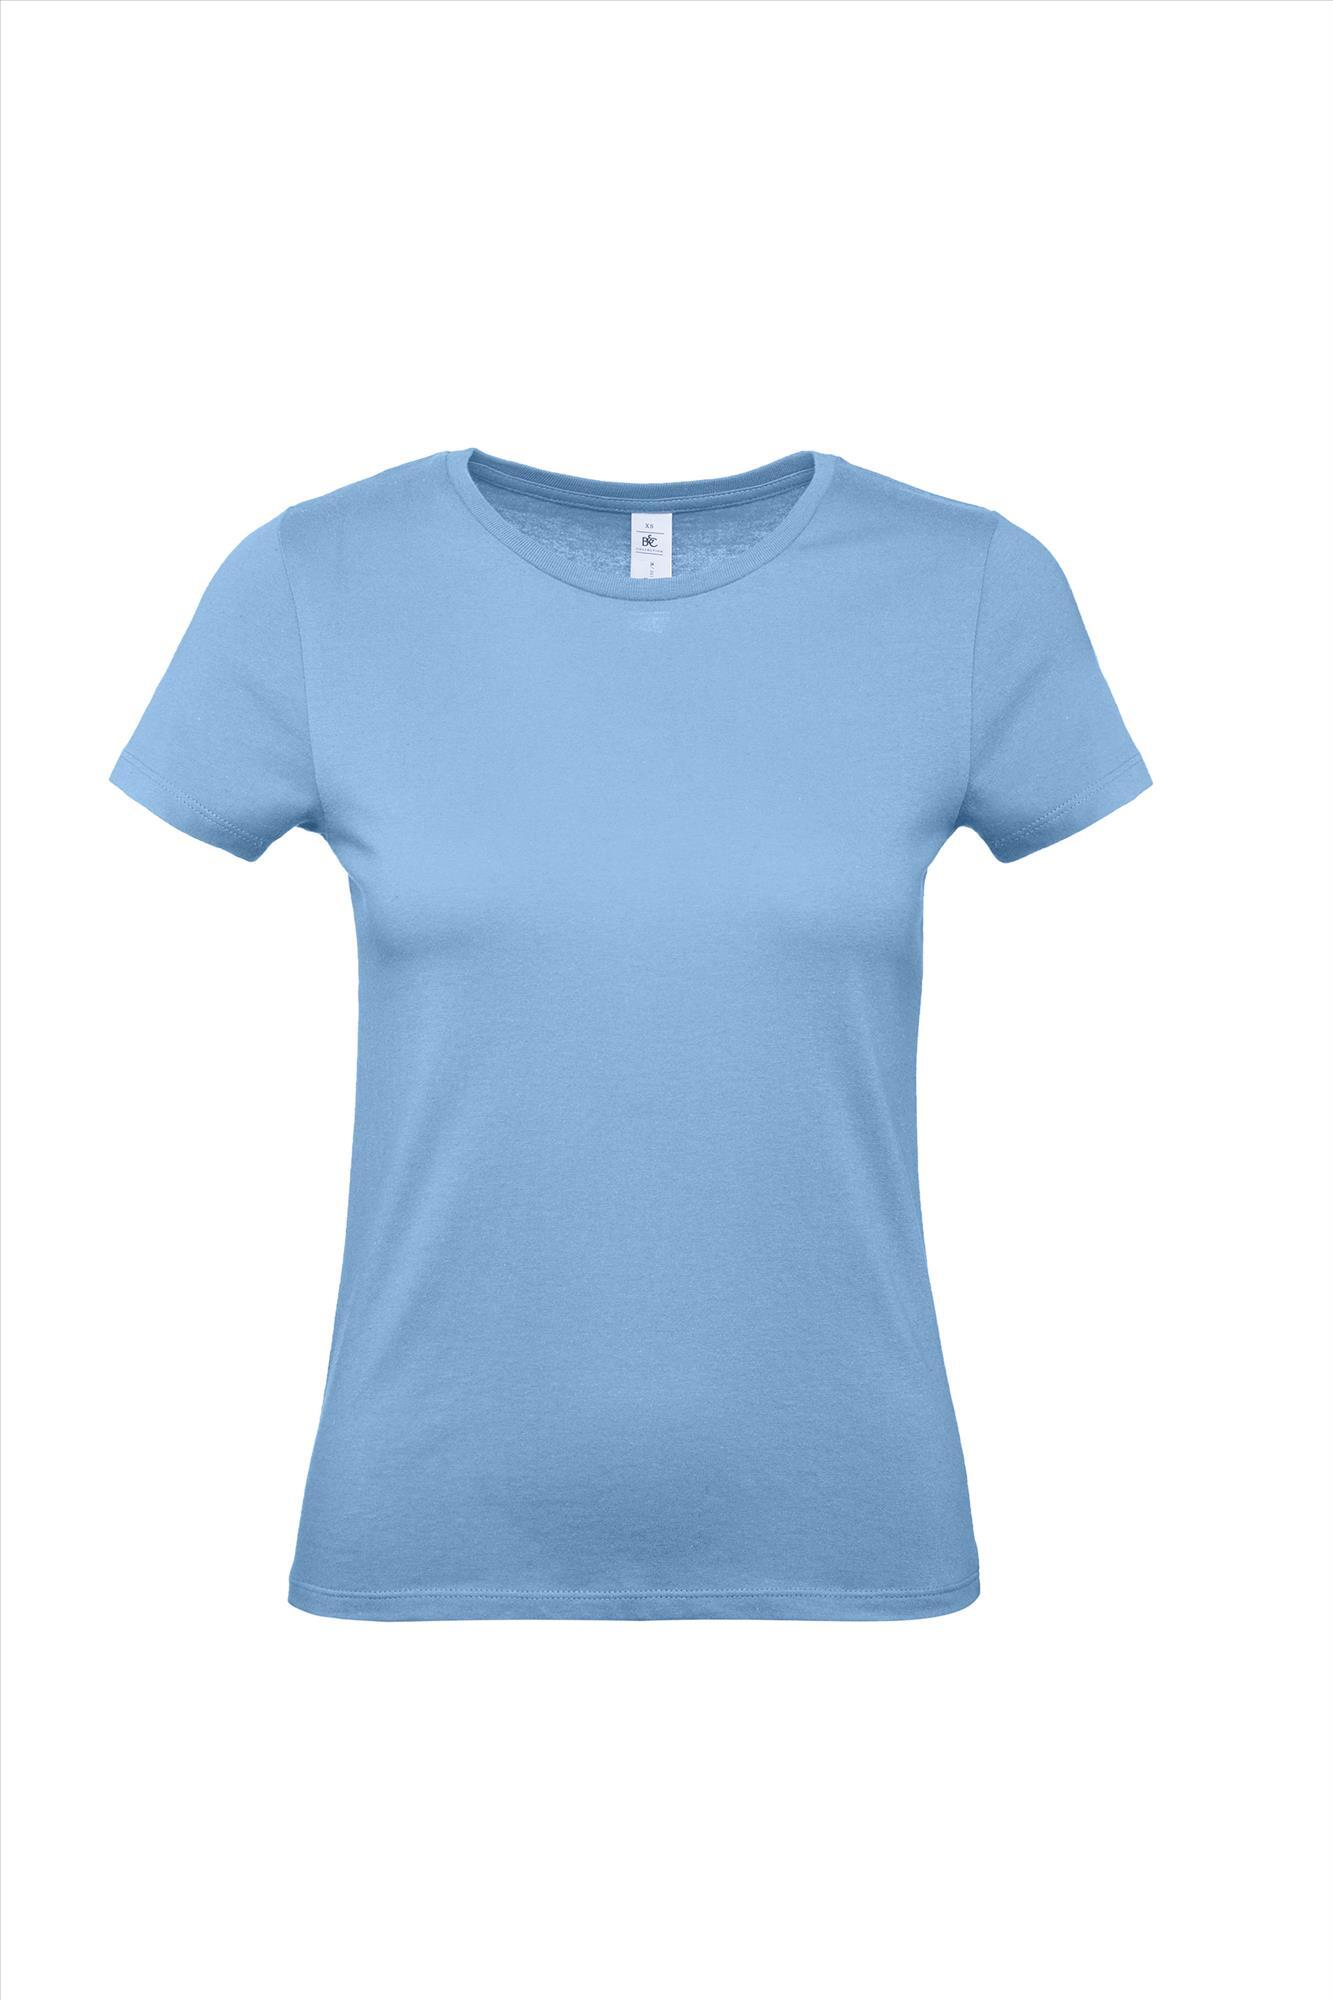 Modern T-shirt voor haar dames shirt hemelsblauw